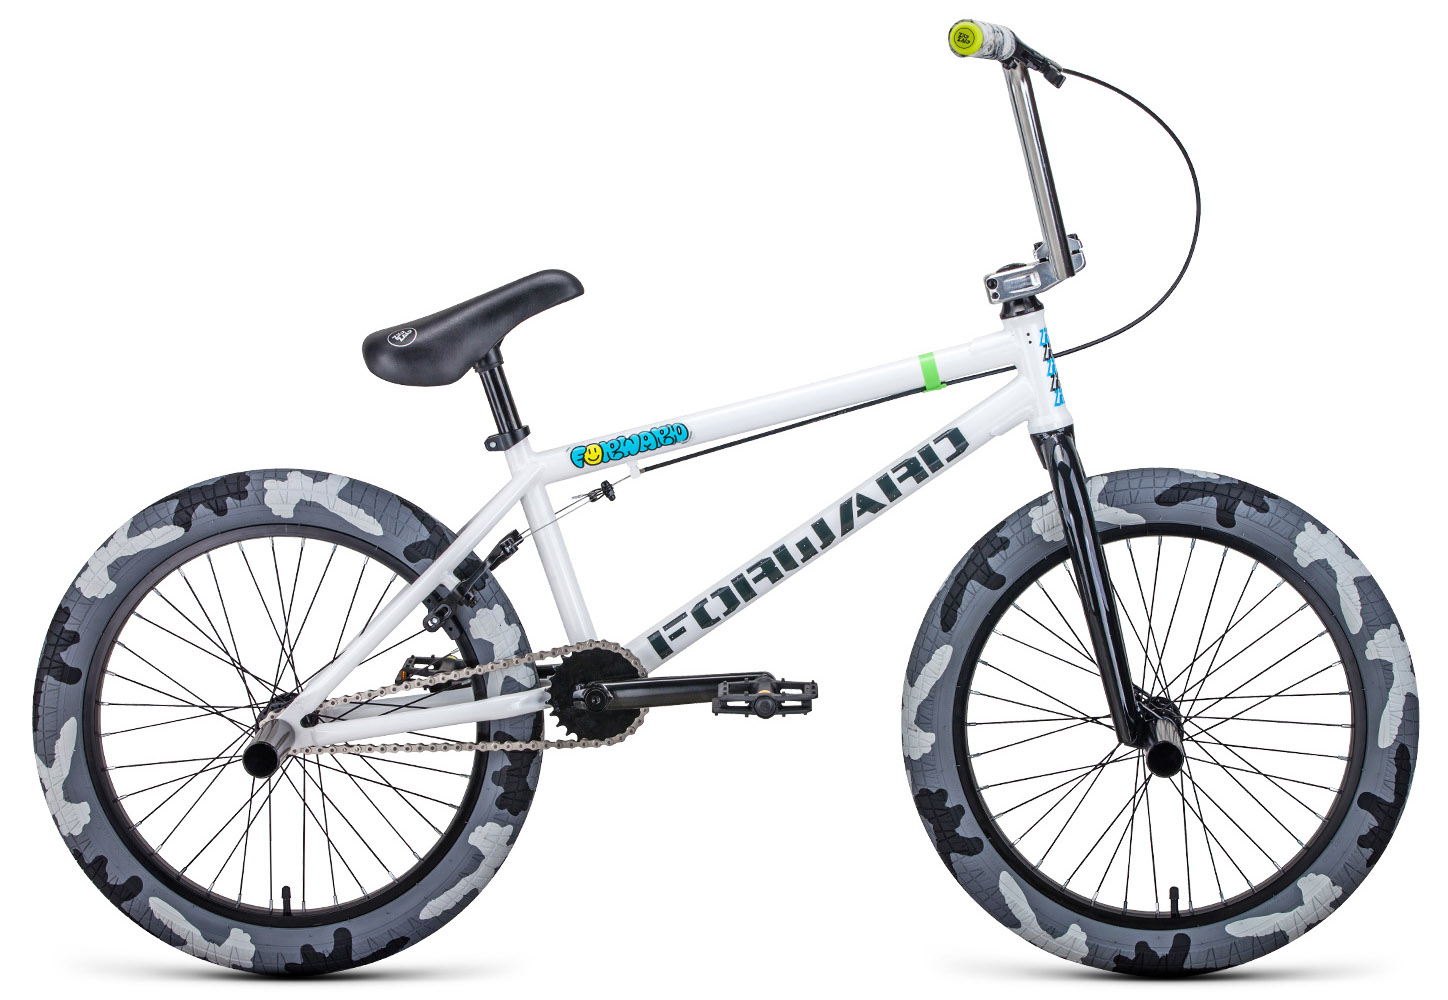  Отзывы о Велосипеде BMX Forward Zigzag 20 (2021) 2021